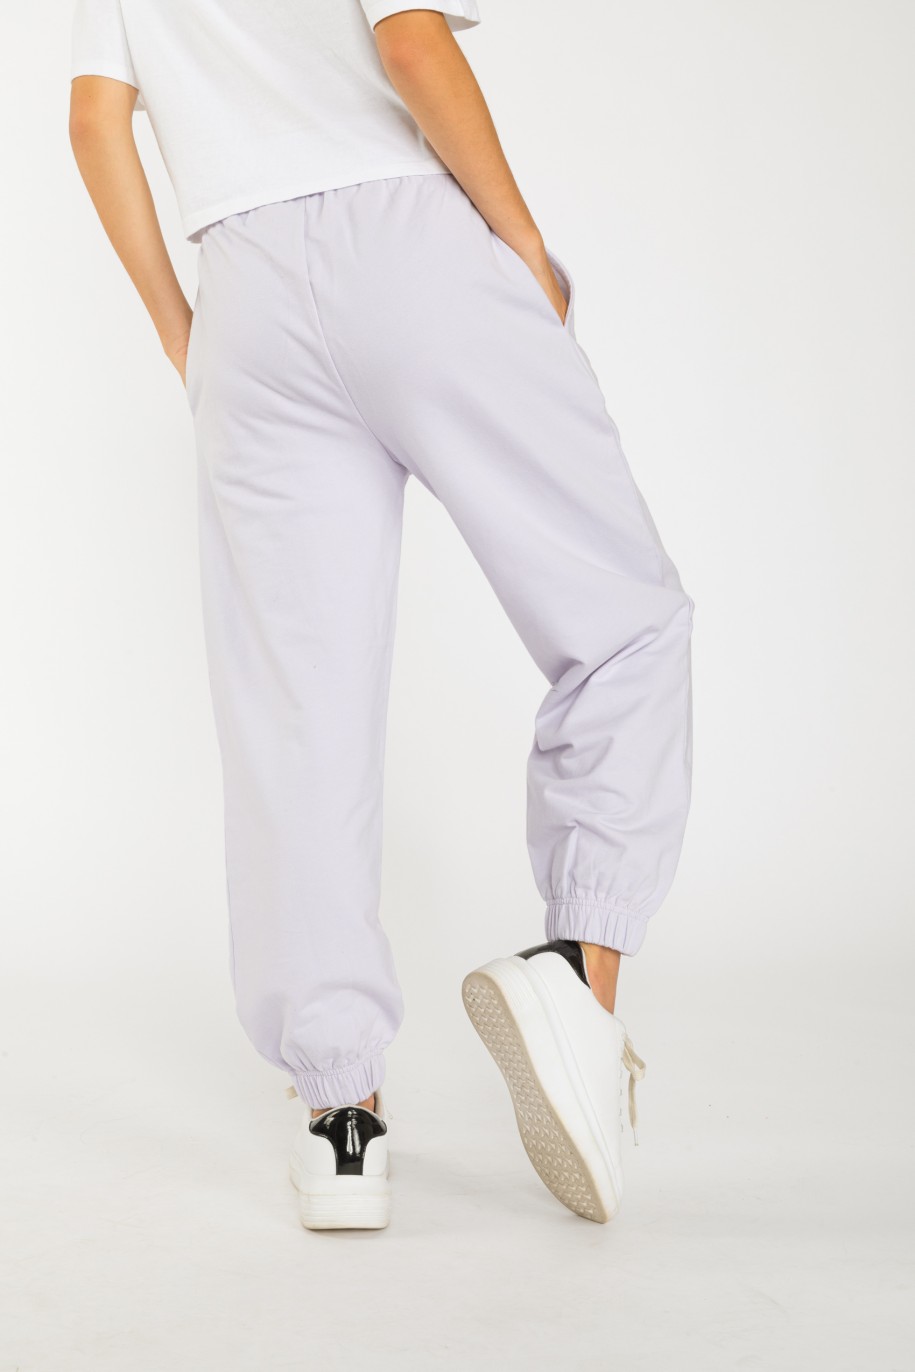 Liliowe pastelowe spodnie dresowe ze ściągaczem - 36411